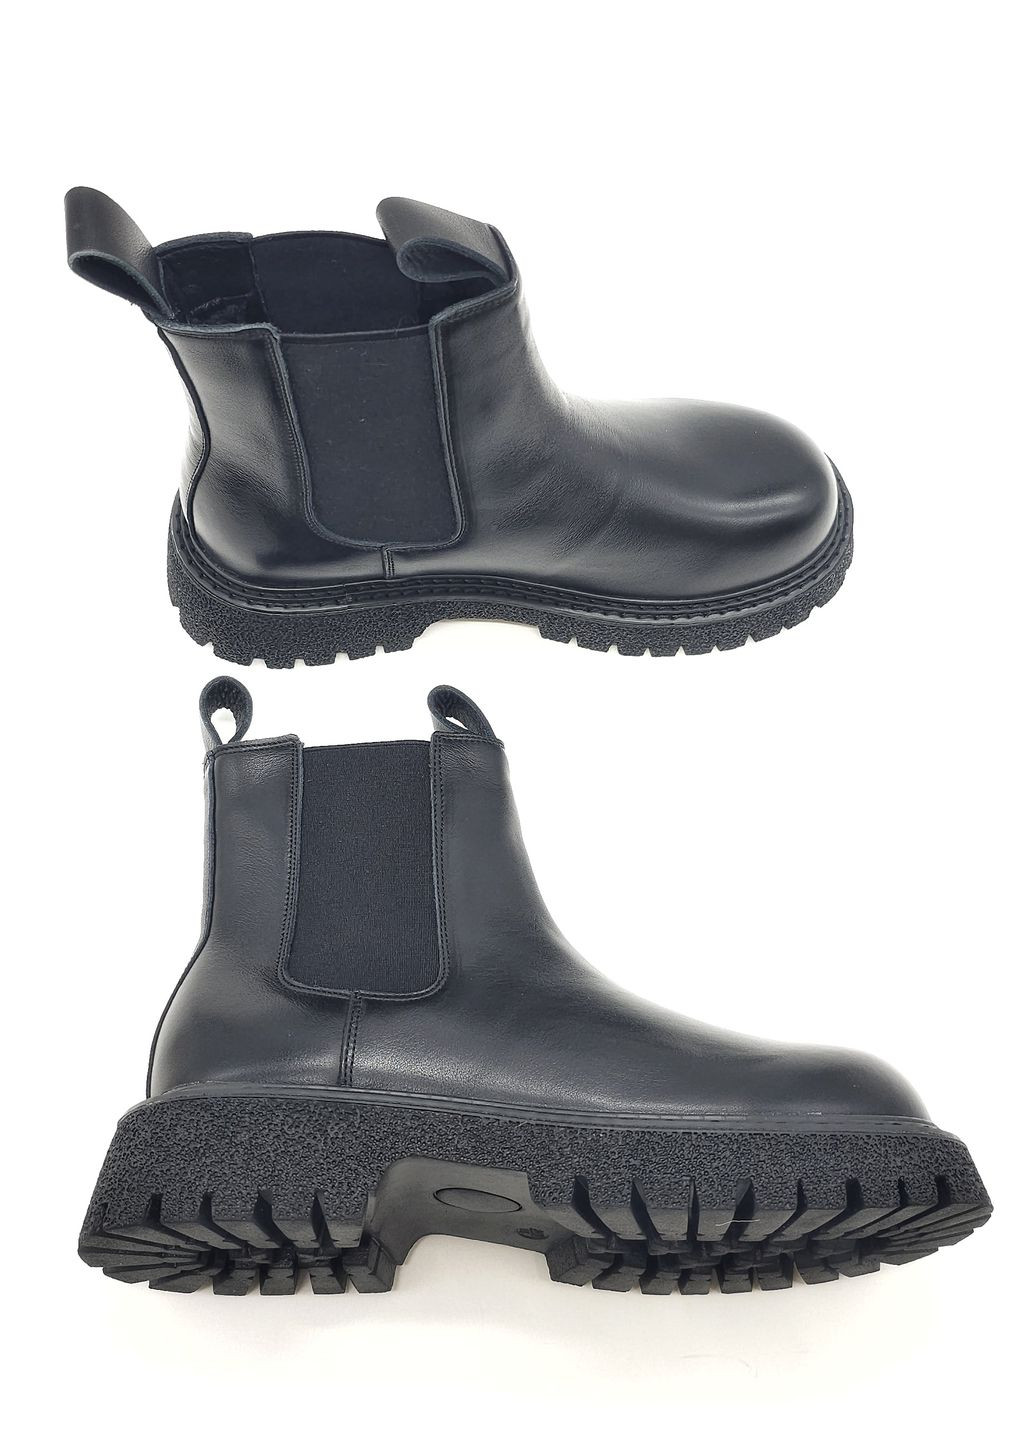 Жіночі черевики чорні шкіряні BV-13-12 23 см (р) Boss Victori (266777875)